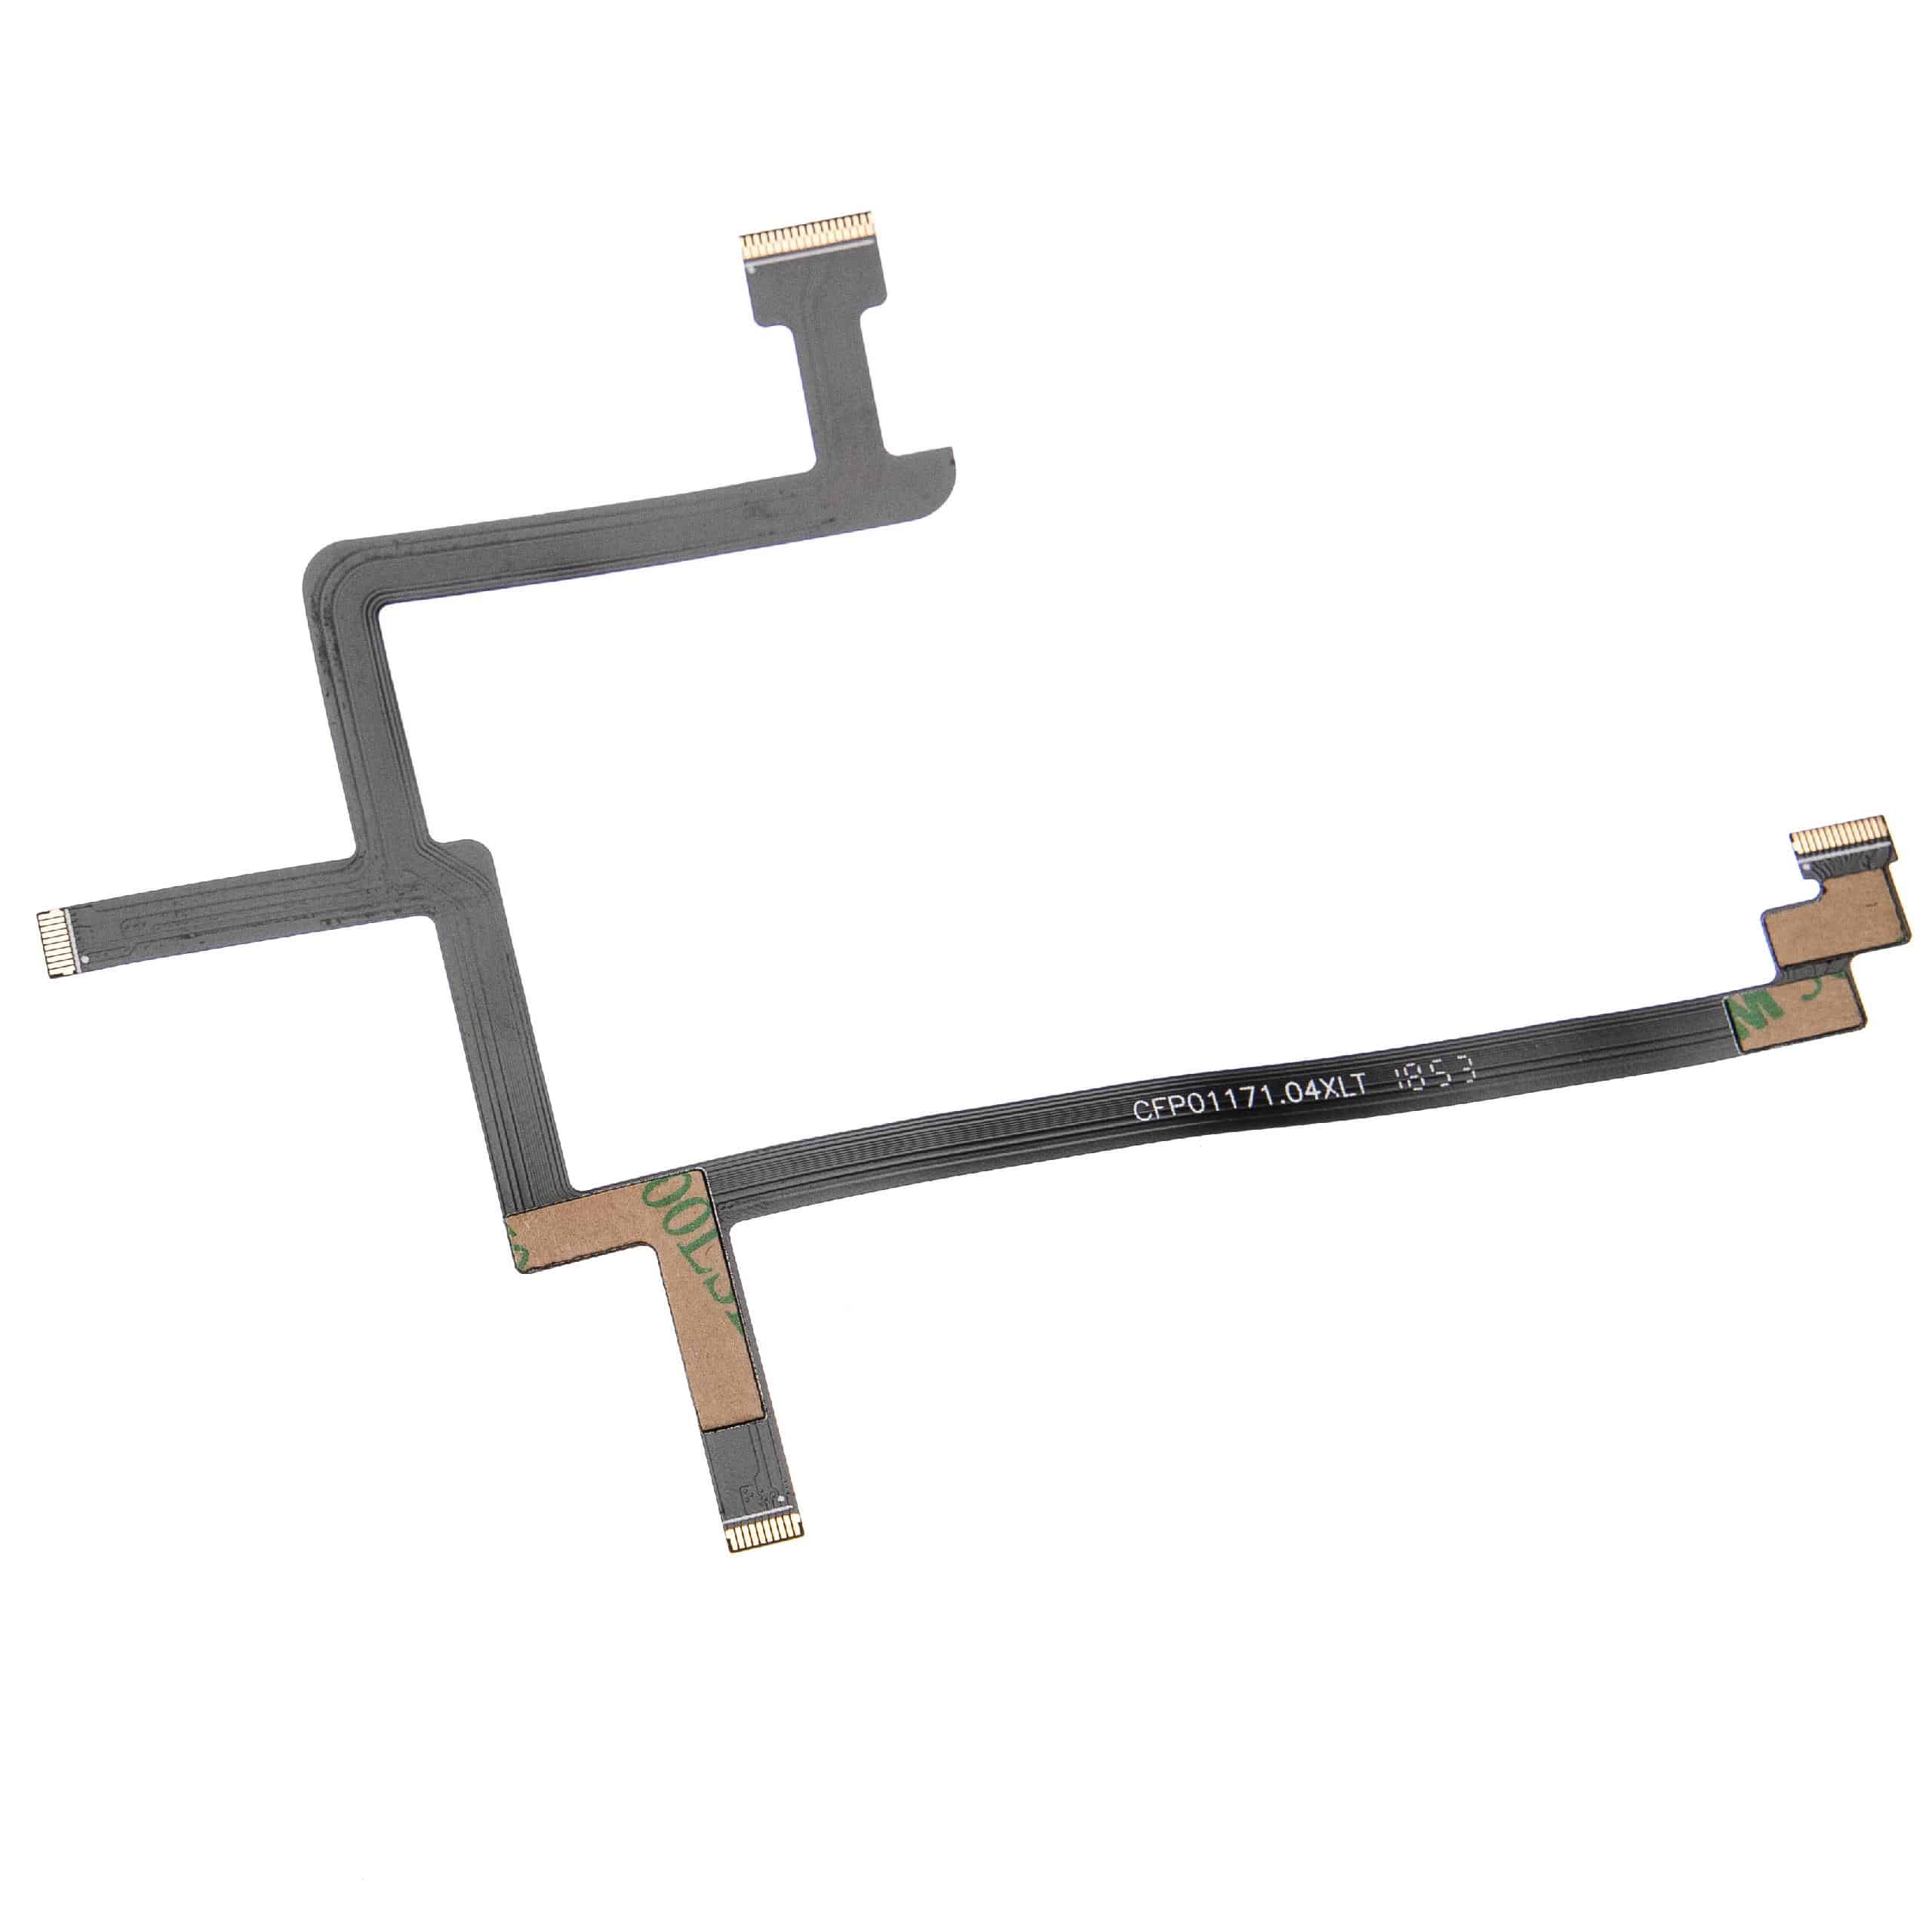 Câble plat flexible pour drone, Gimbal DJI Phantom 3 Standard